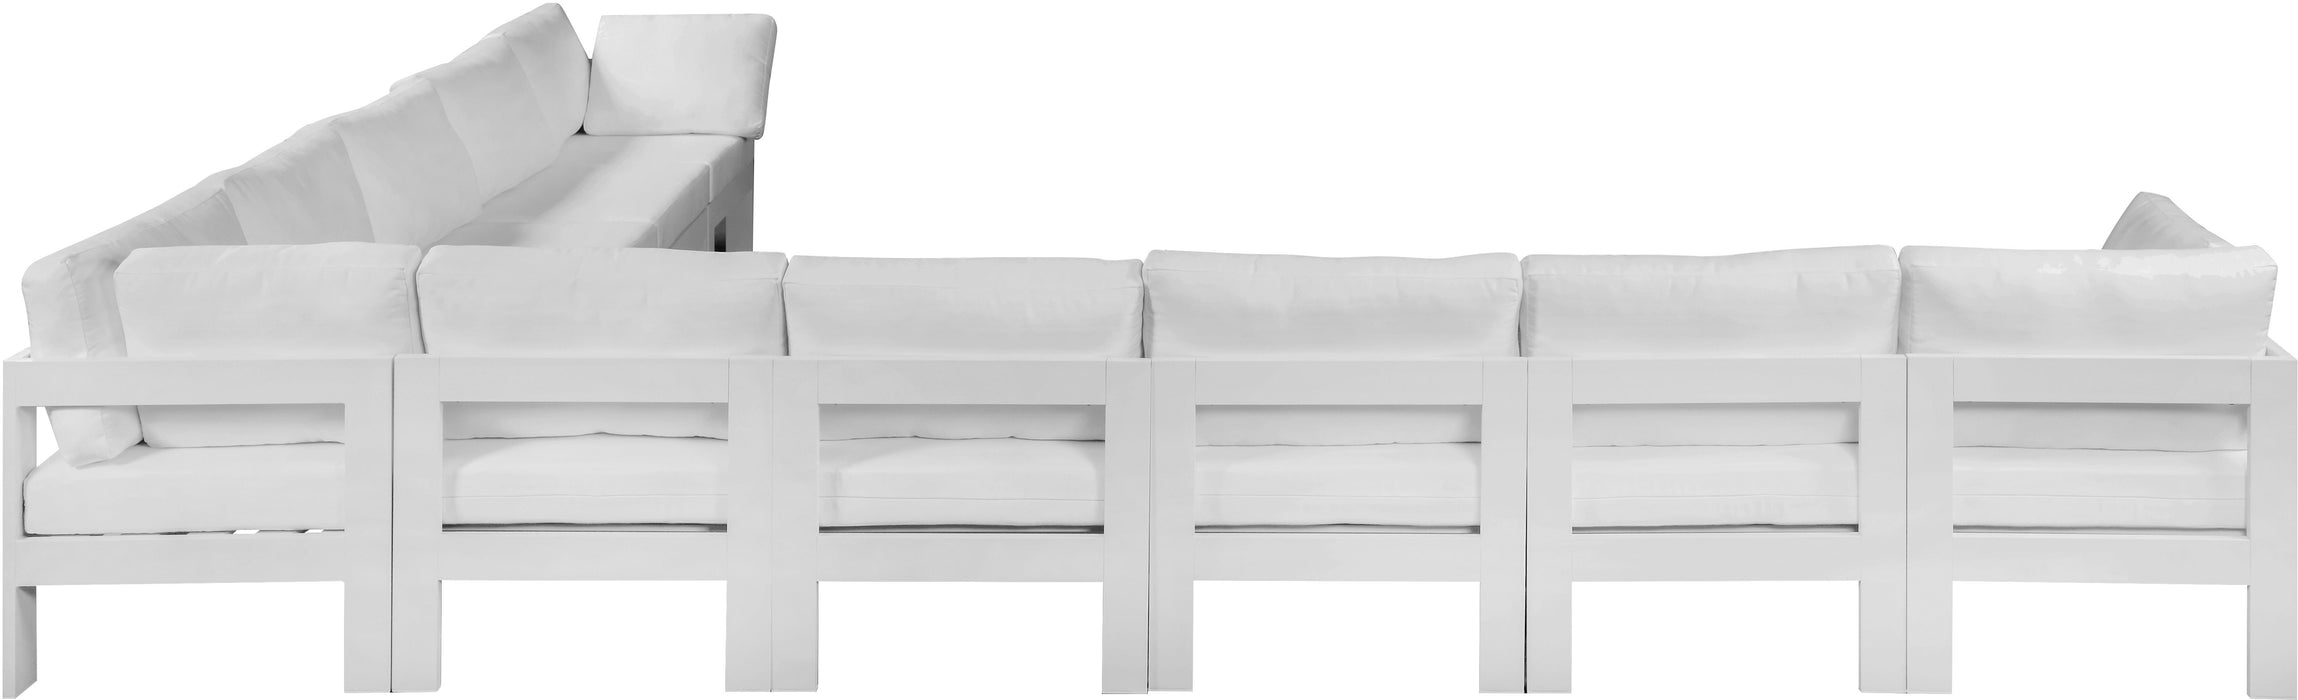 Nizuc - Outdoor Patio Modular Sectional 10 Piece - White - Modern & Contemporary